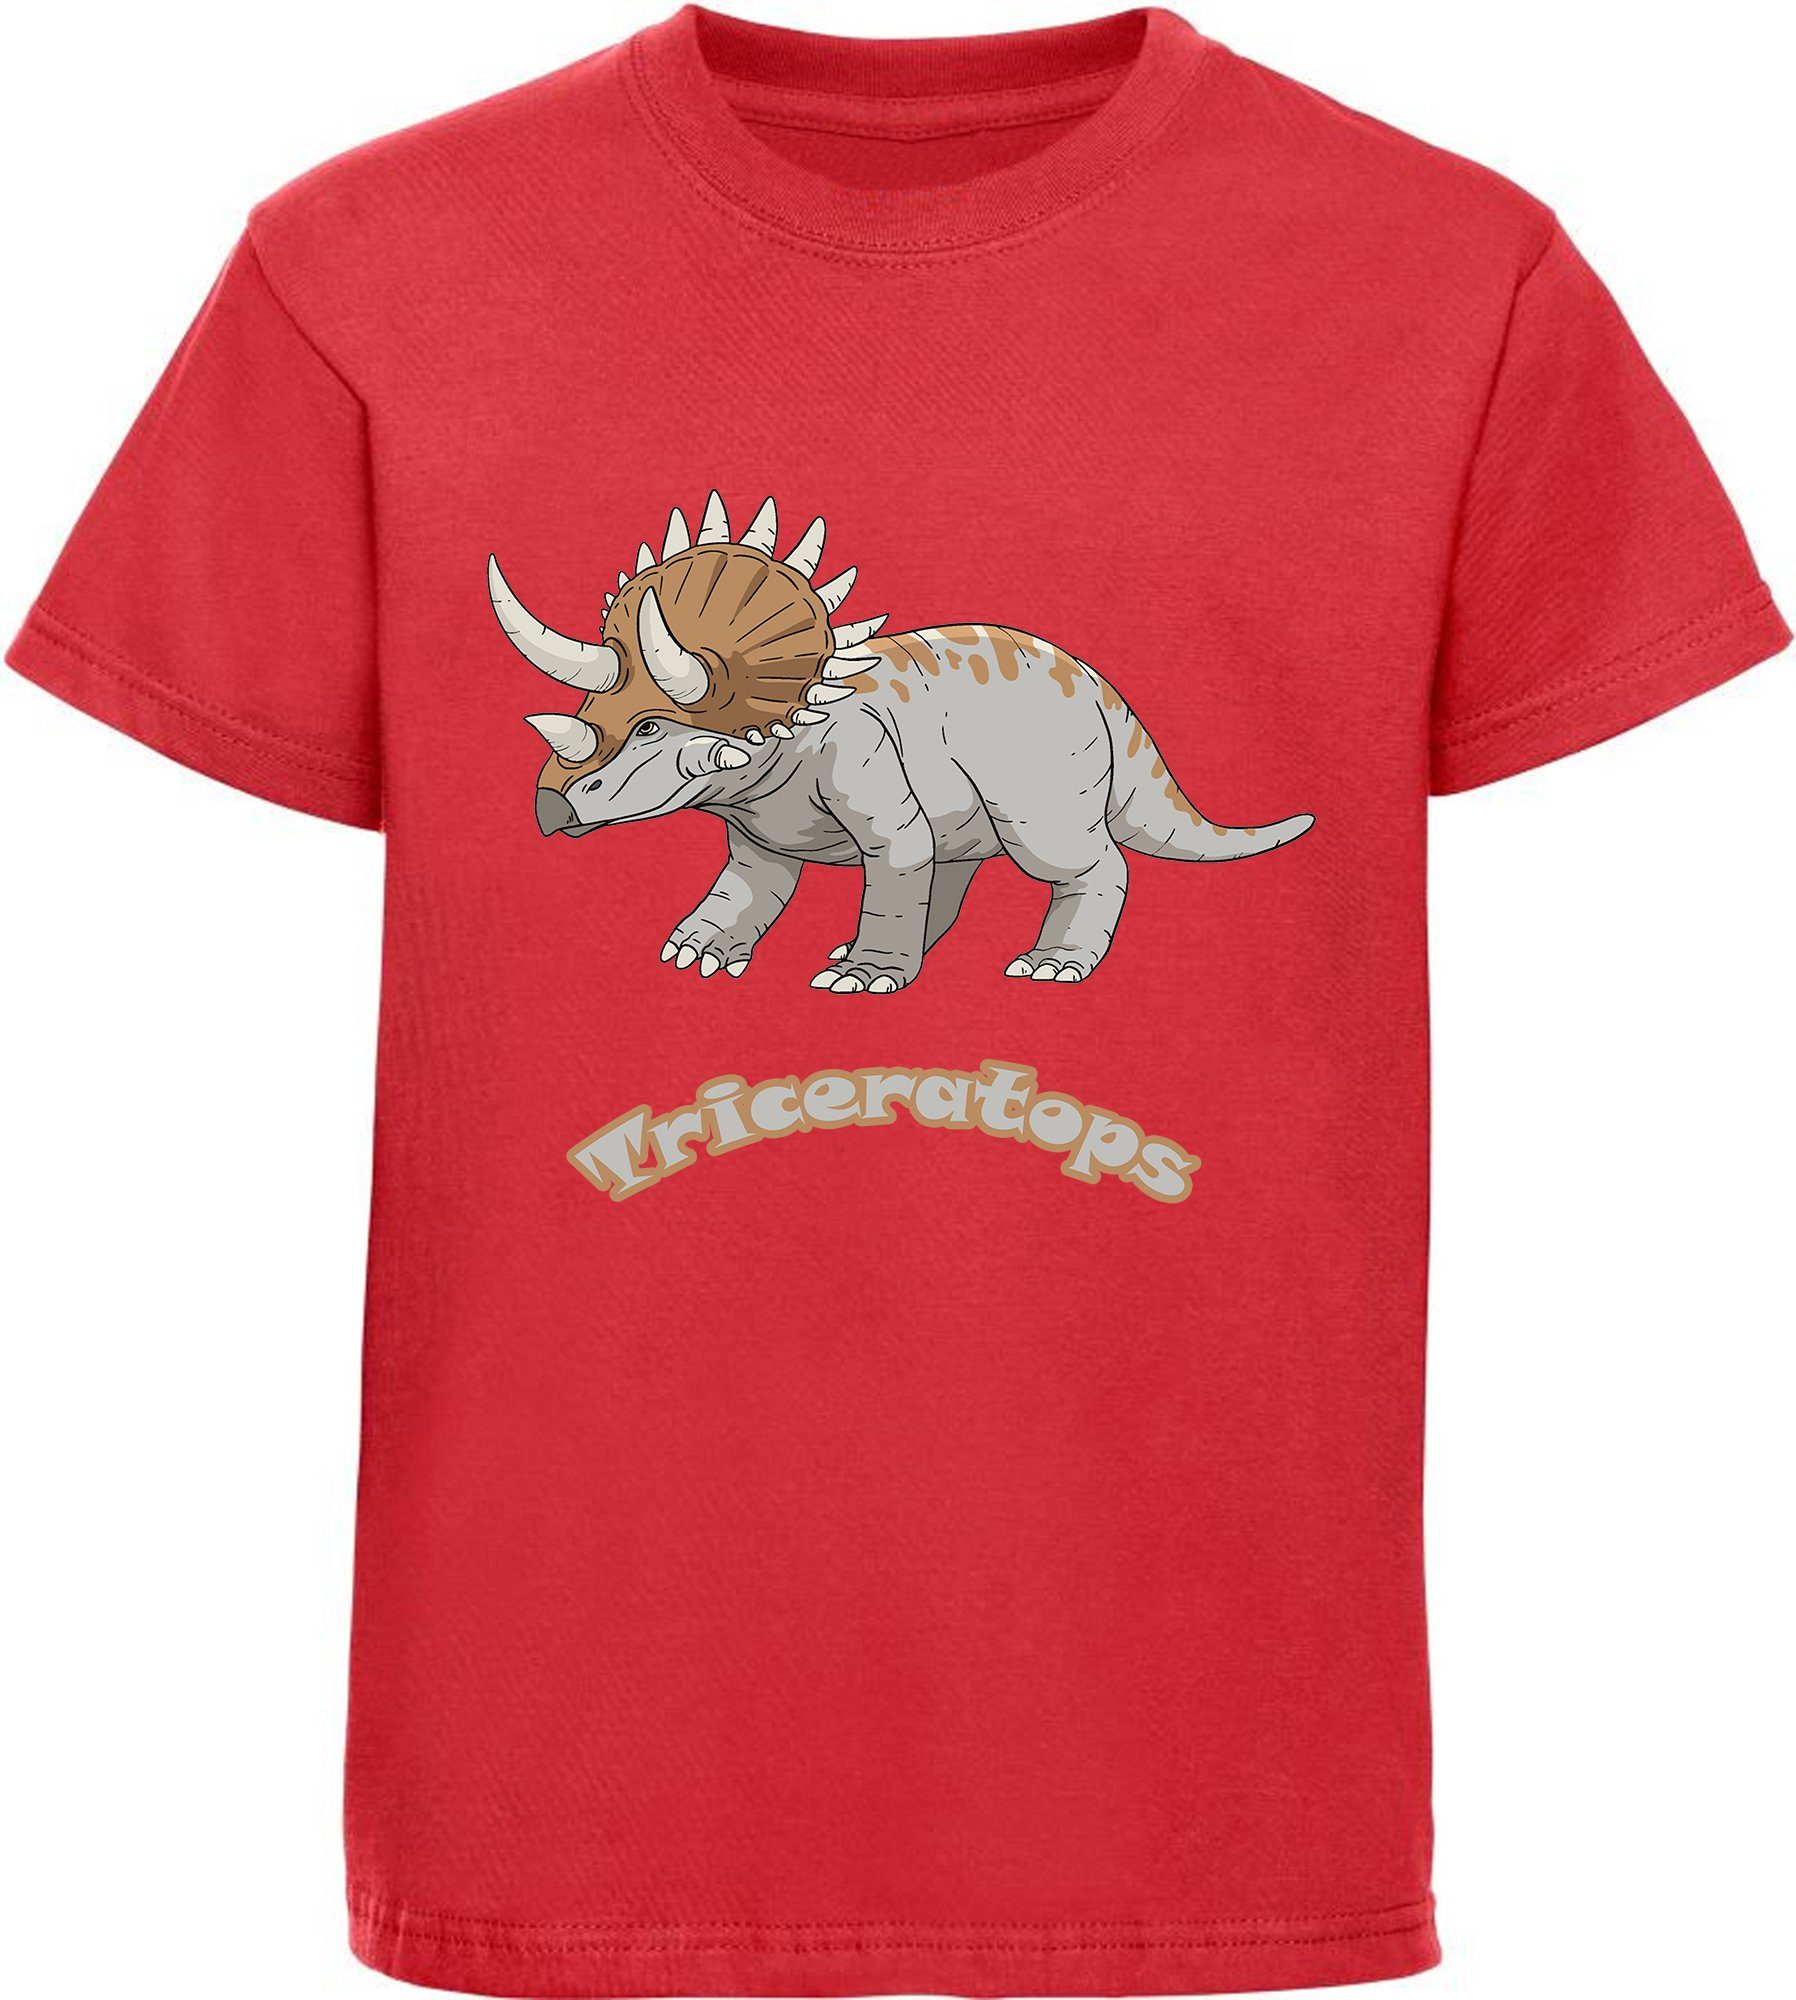 MyDesign24 T-Shirt bedrucktes Kinder T-Shirt mit Triceratops 100% Baumwolle mit Dino Aufdruck, rot i52